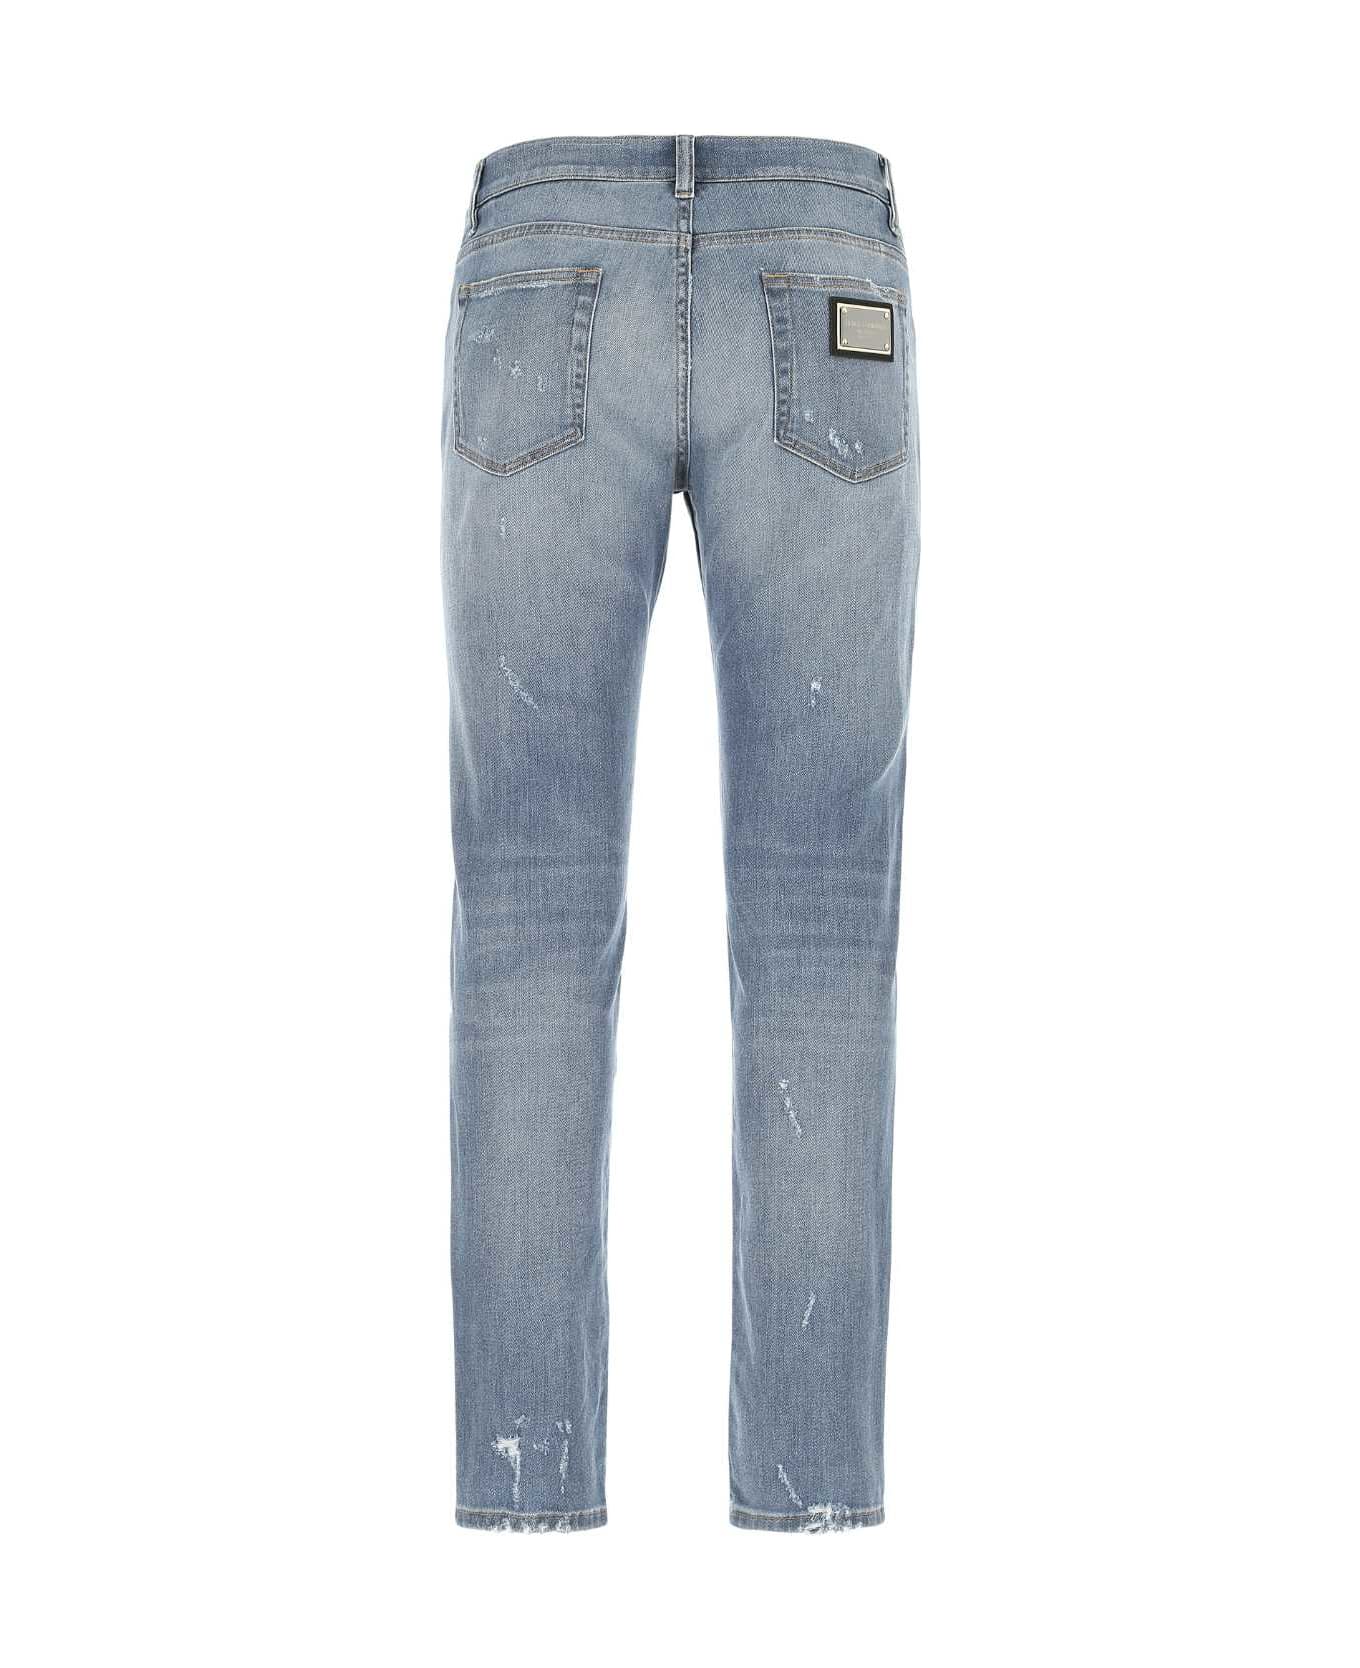 Dolce & Gabbana Stretch Denim Jeans - S9001